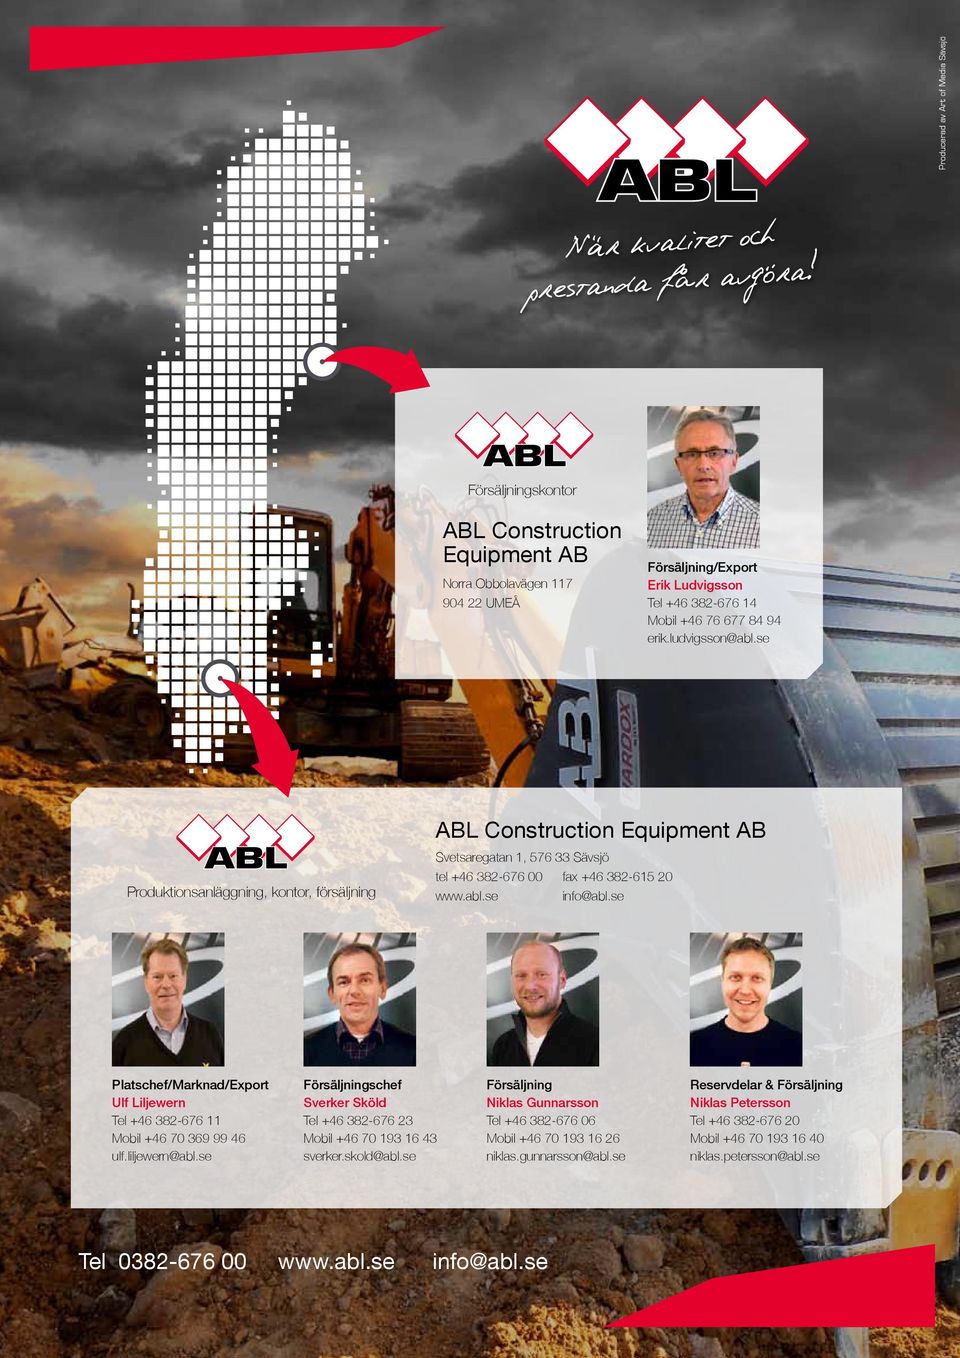 se ABL Construction Equipment AB Produktionsanläggning, kontor, försäljning Svetsaregatan 1, 576 33 Sävsjö tel +46 382-676 00 fax +46 382-615 20 www.abl.se info@abl.